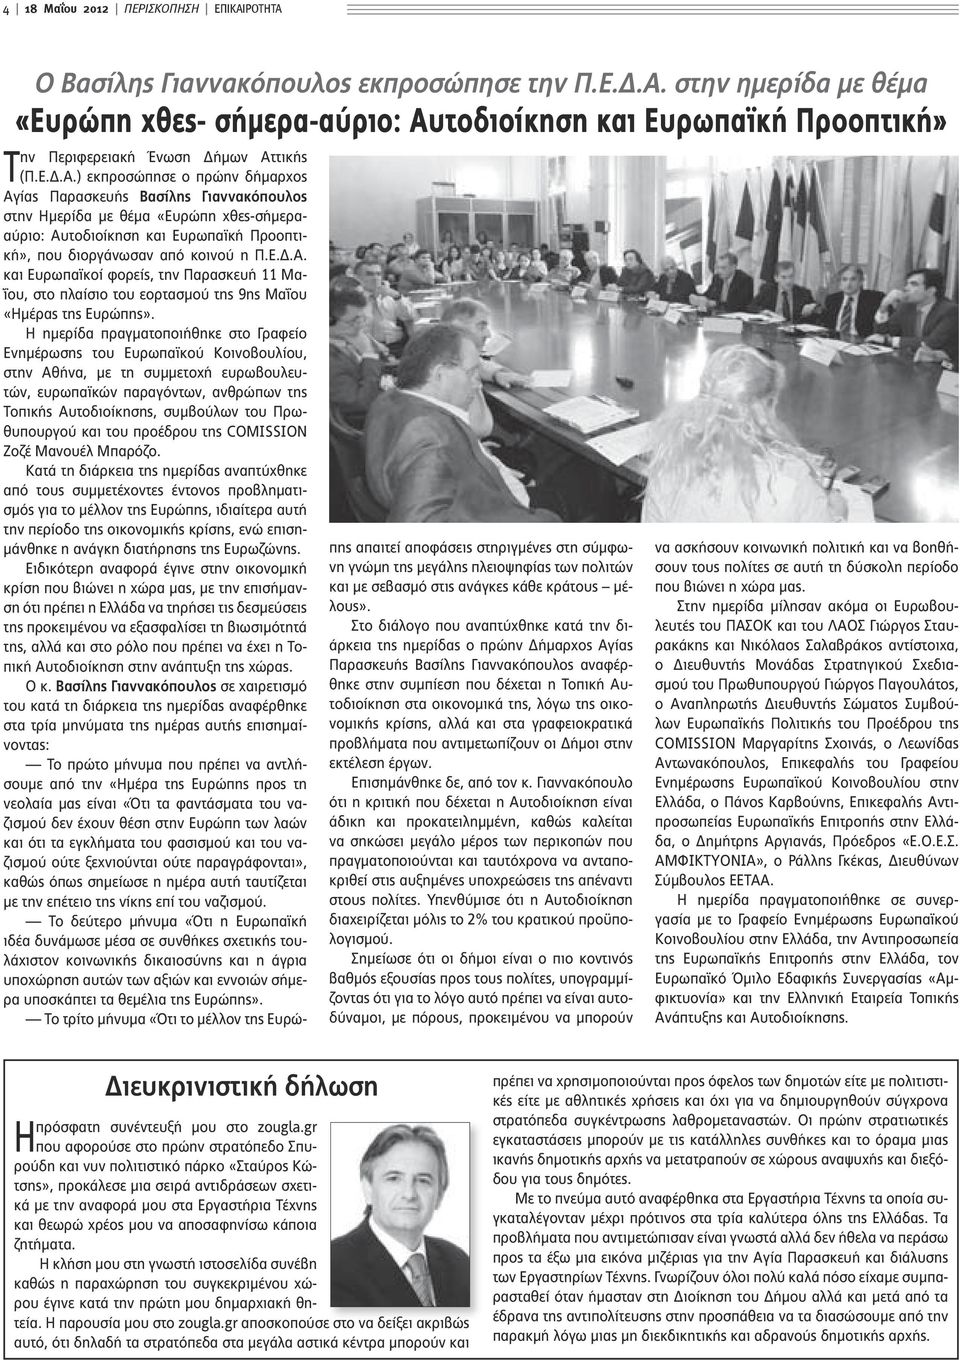 Η ημερίδα πραγματοποιήθηκε στο Γραφείο Ενημέρωσης του Ευρωπαϊκού Κοινοβουλίου, στην Αθήνα, με τη συμμετοχή ευρωβουλευτών, ευρωπαϊκών παραγόντων, ανθρώπων της Τοπικής Αυτοδιοίκησης, συμβούλων του